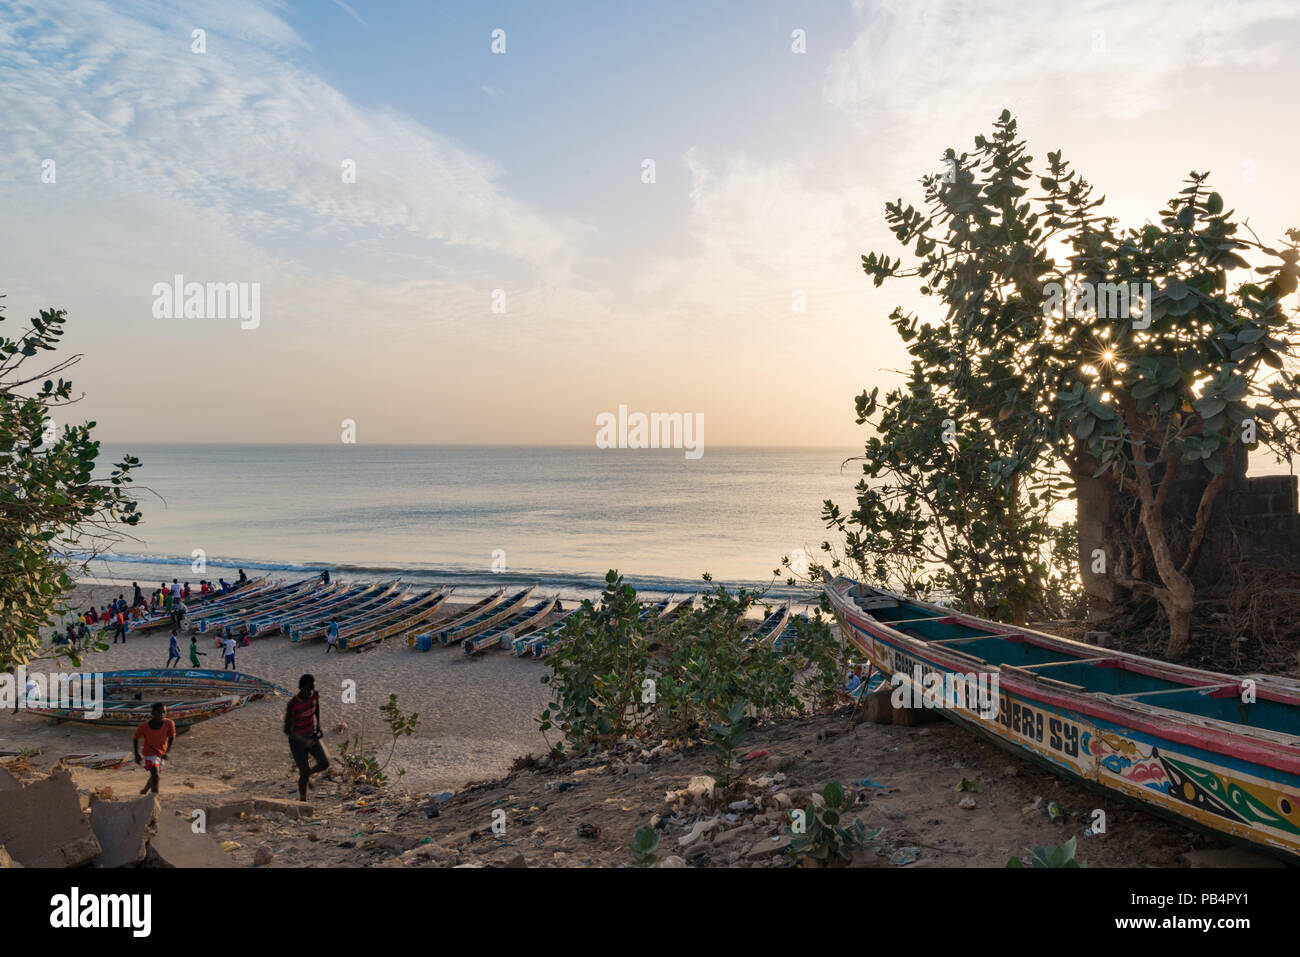 The beach at Toubab Dialao, Senegal Stock Photo